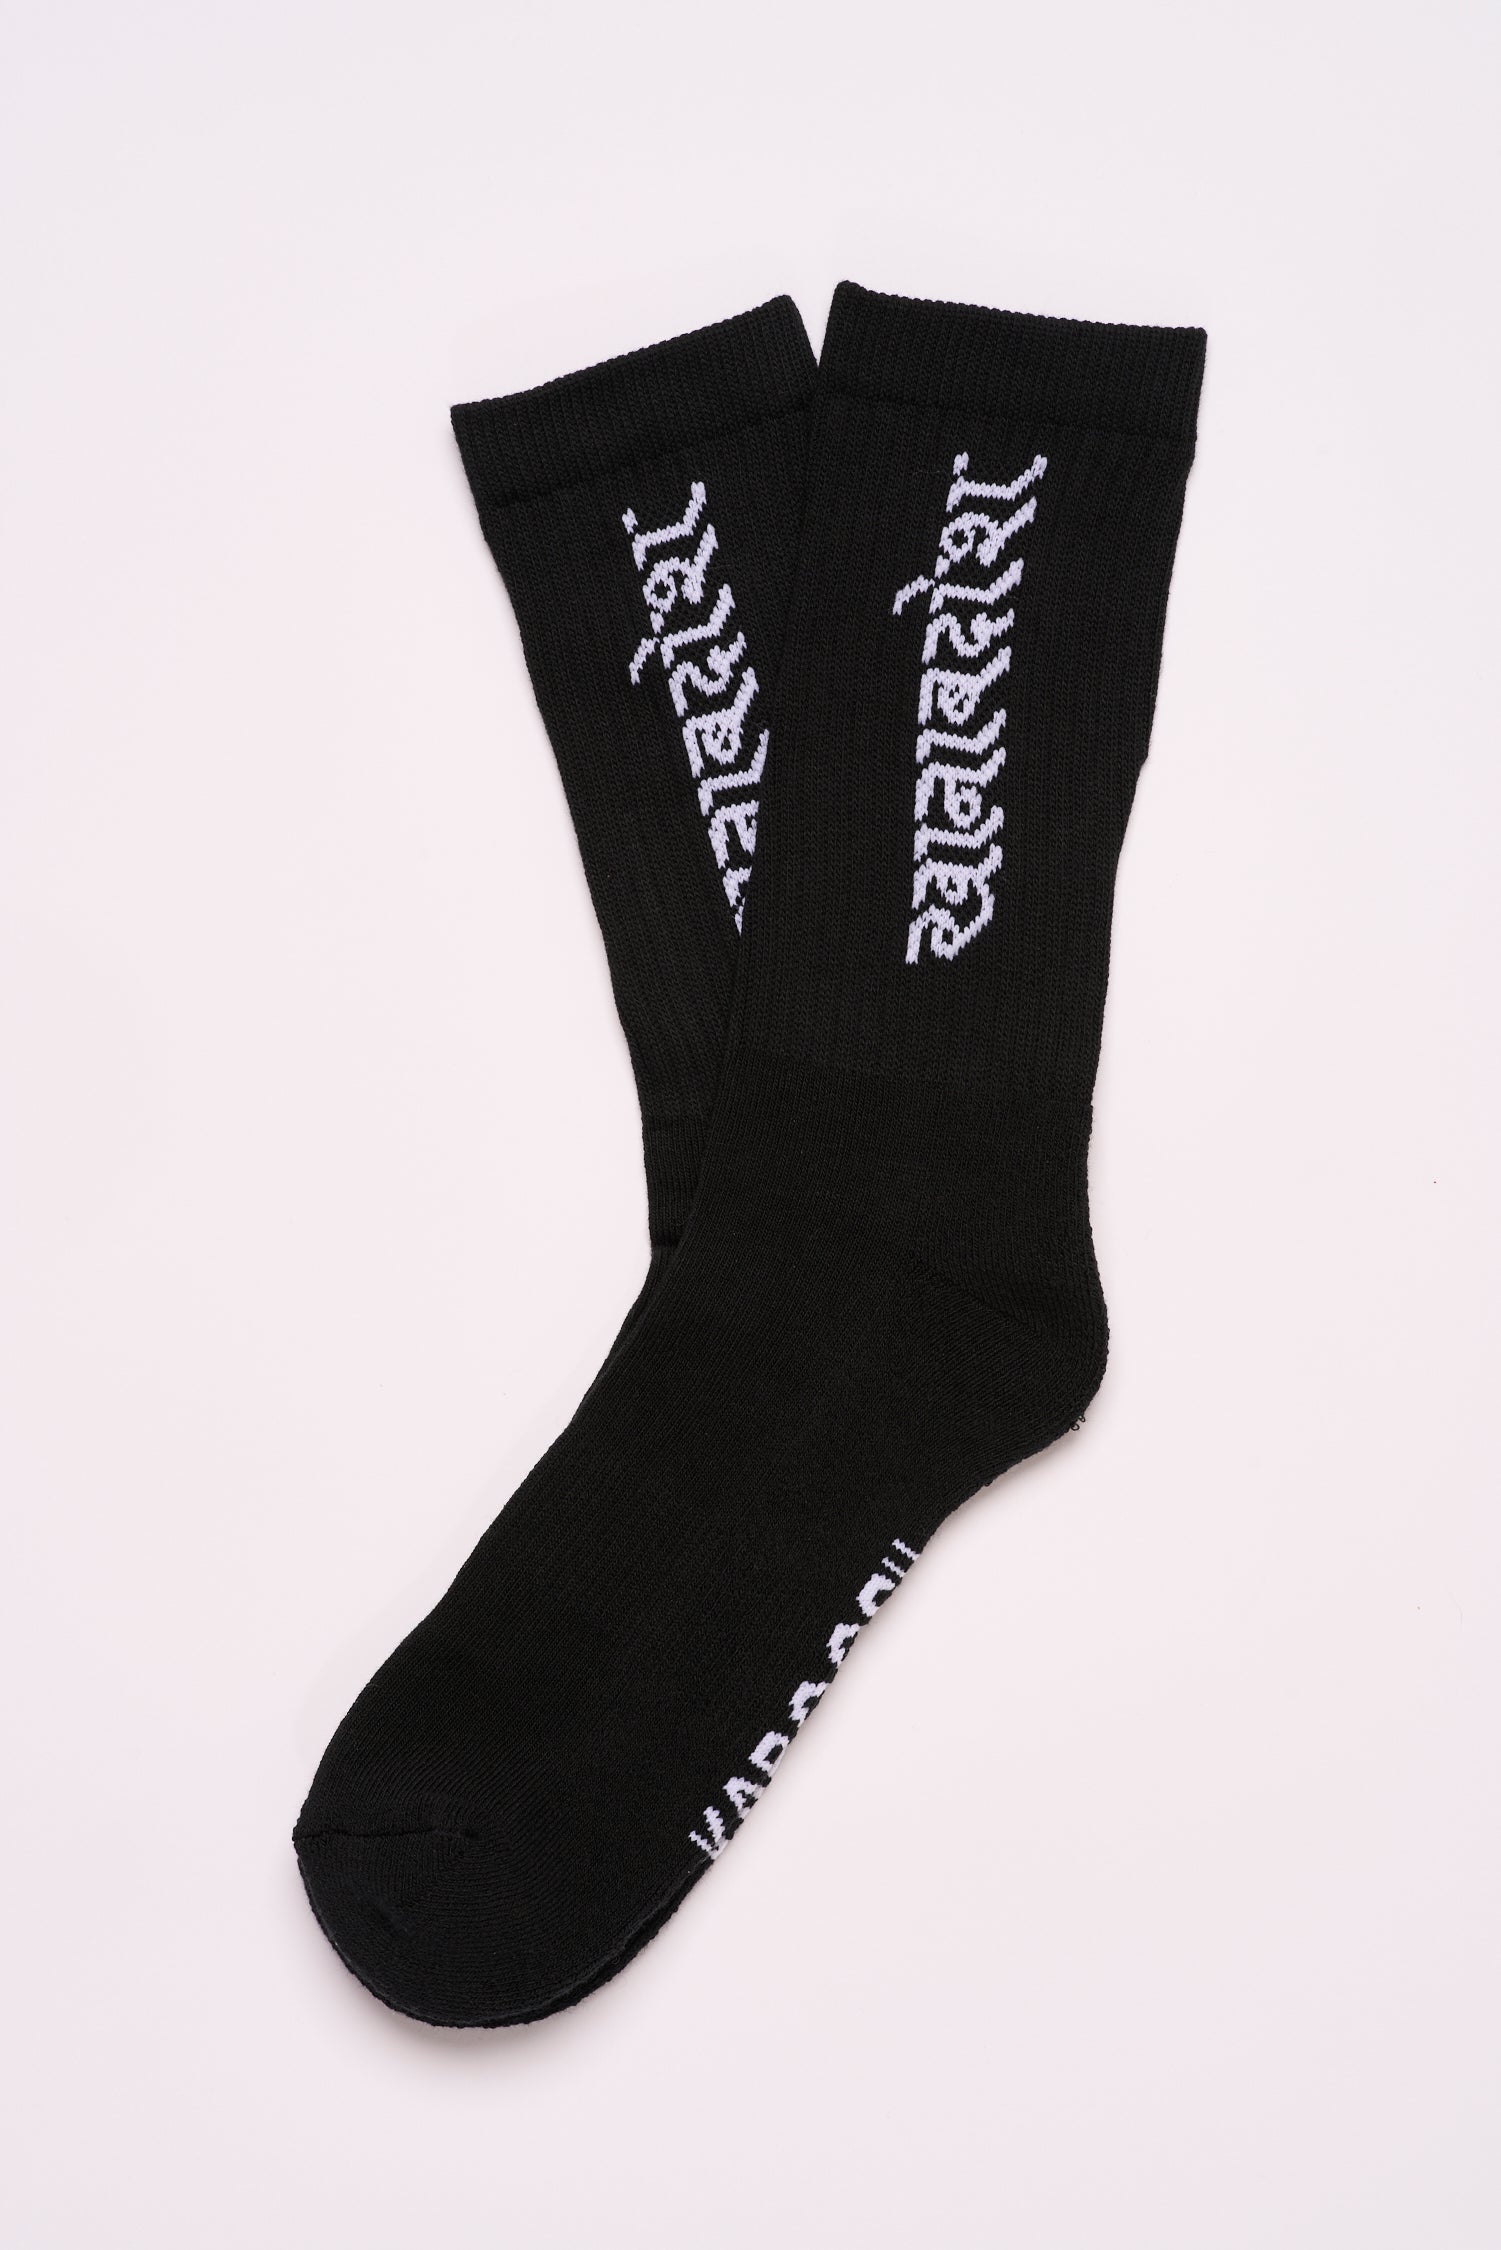 Socks - Hindi - Black and white - one size - Unisex